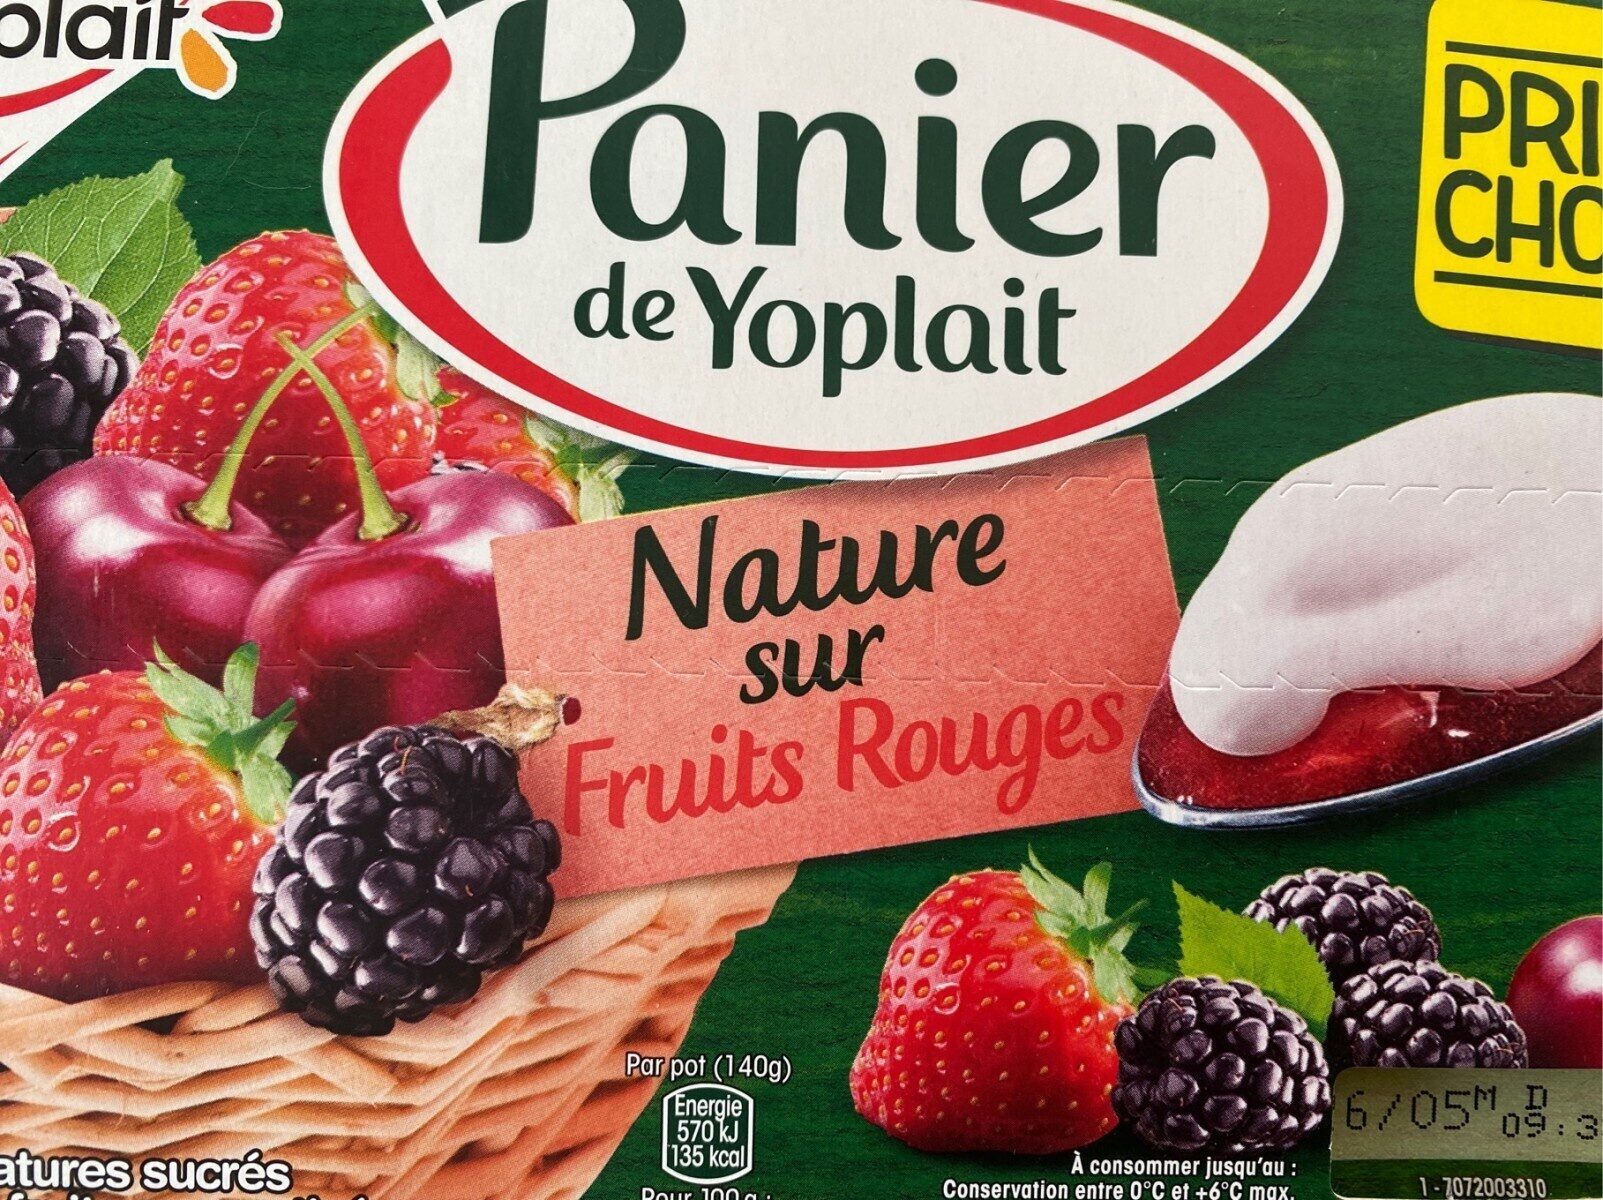 Panier de Yoplait Nature sur Fruits Rouges - Product - fr